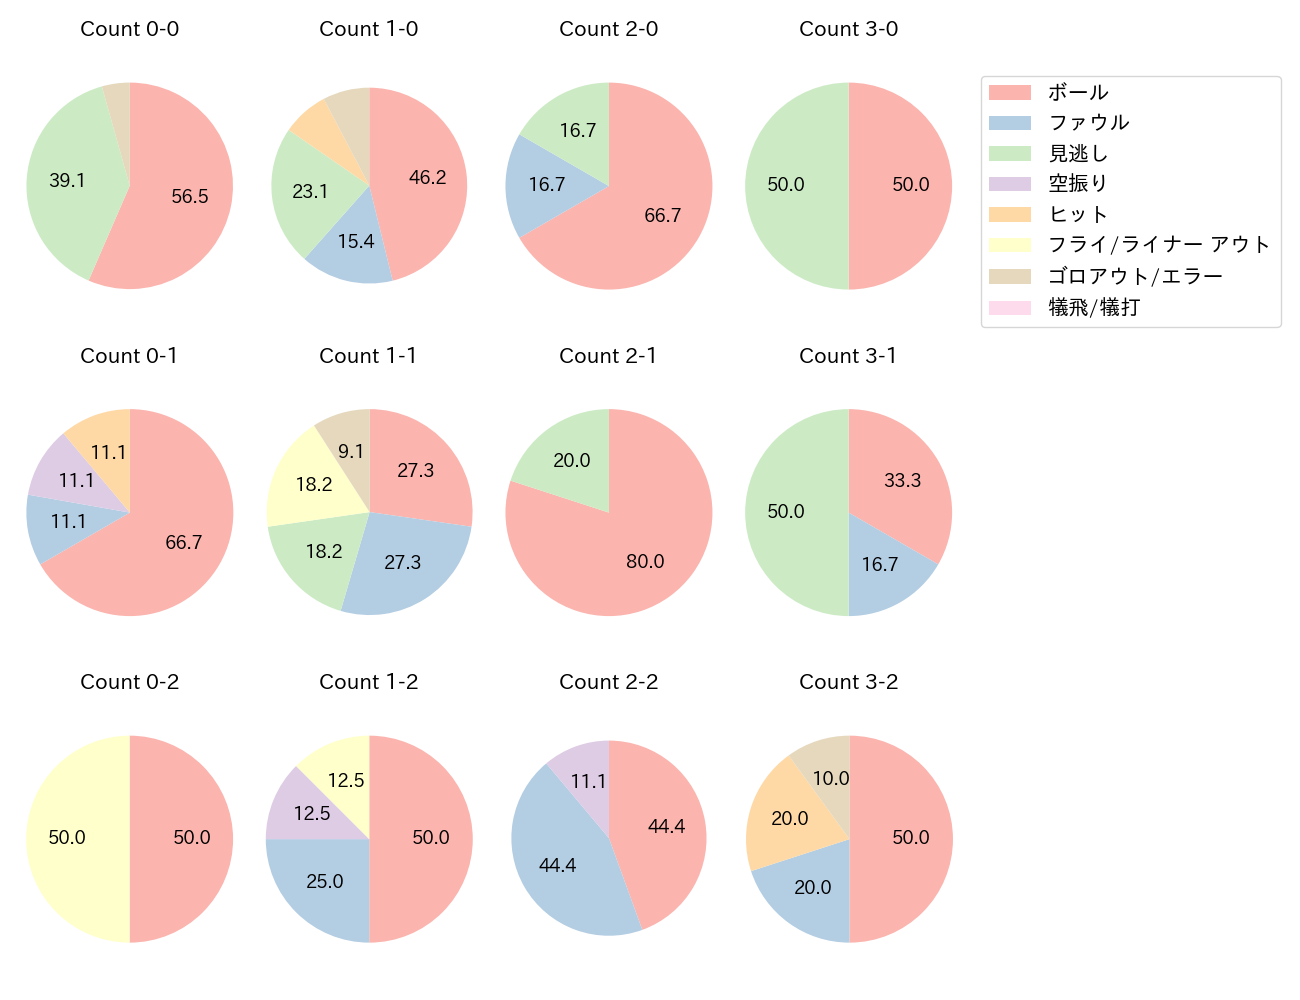 西川 遥輝の球数分布(2021年3月)